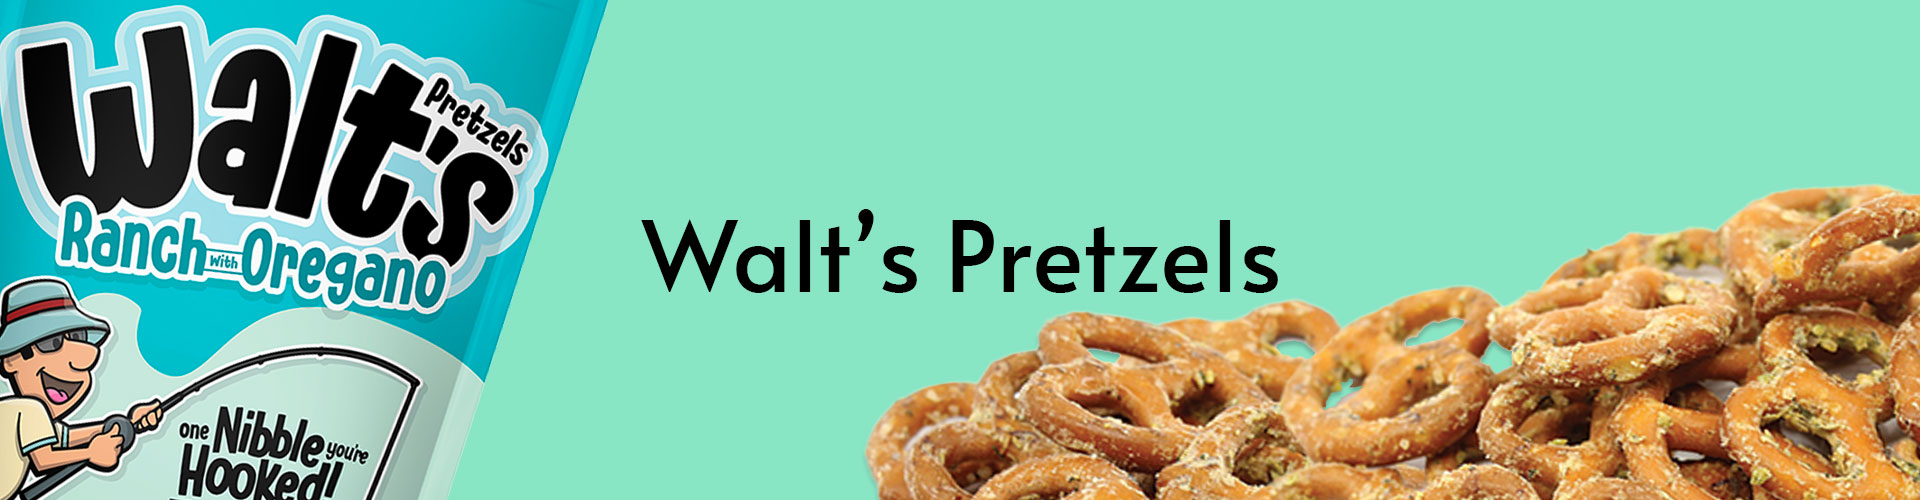 Walt’s Pretzels